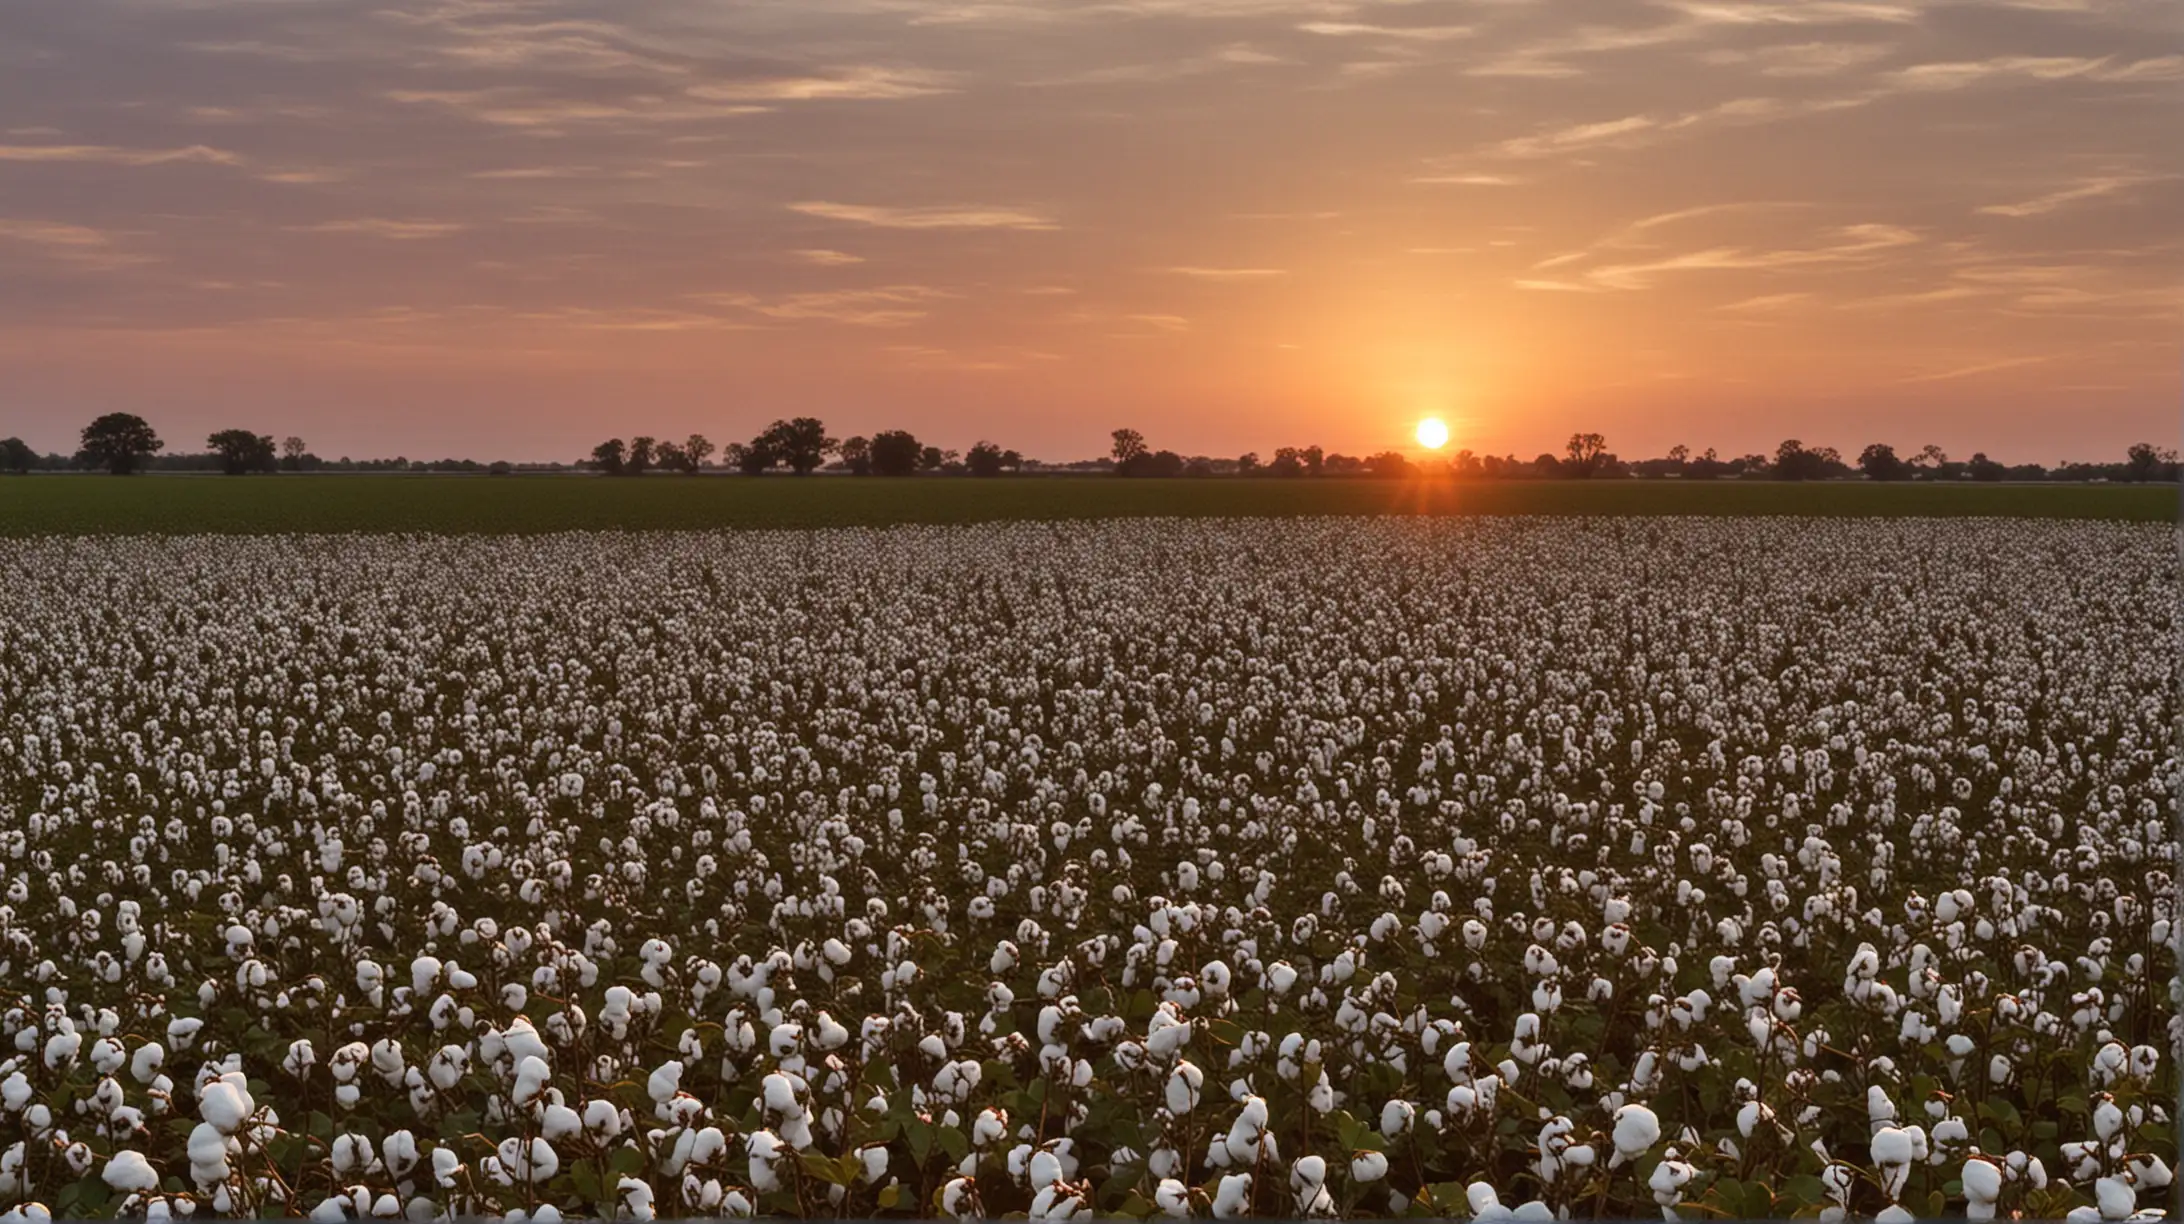 Golden Sunset Over a Vast Cotton Field